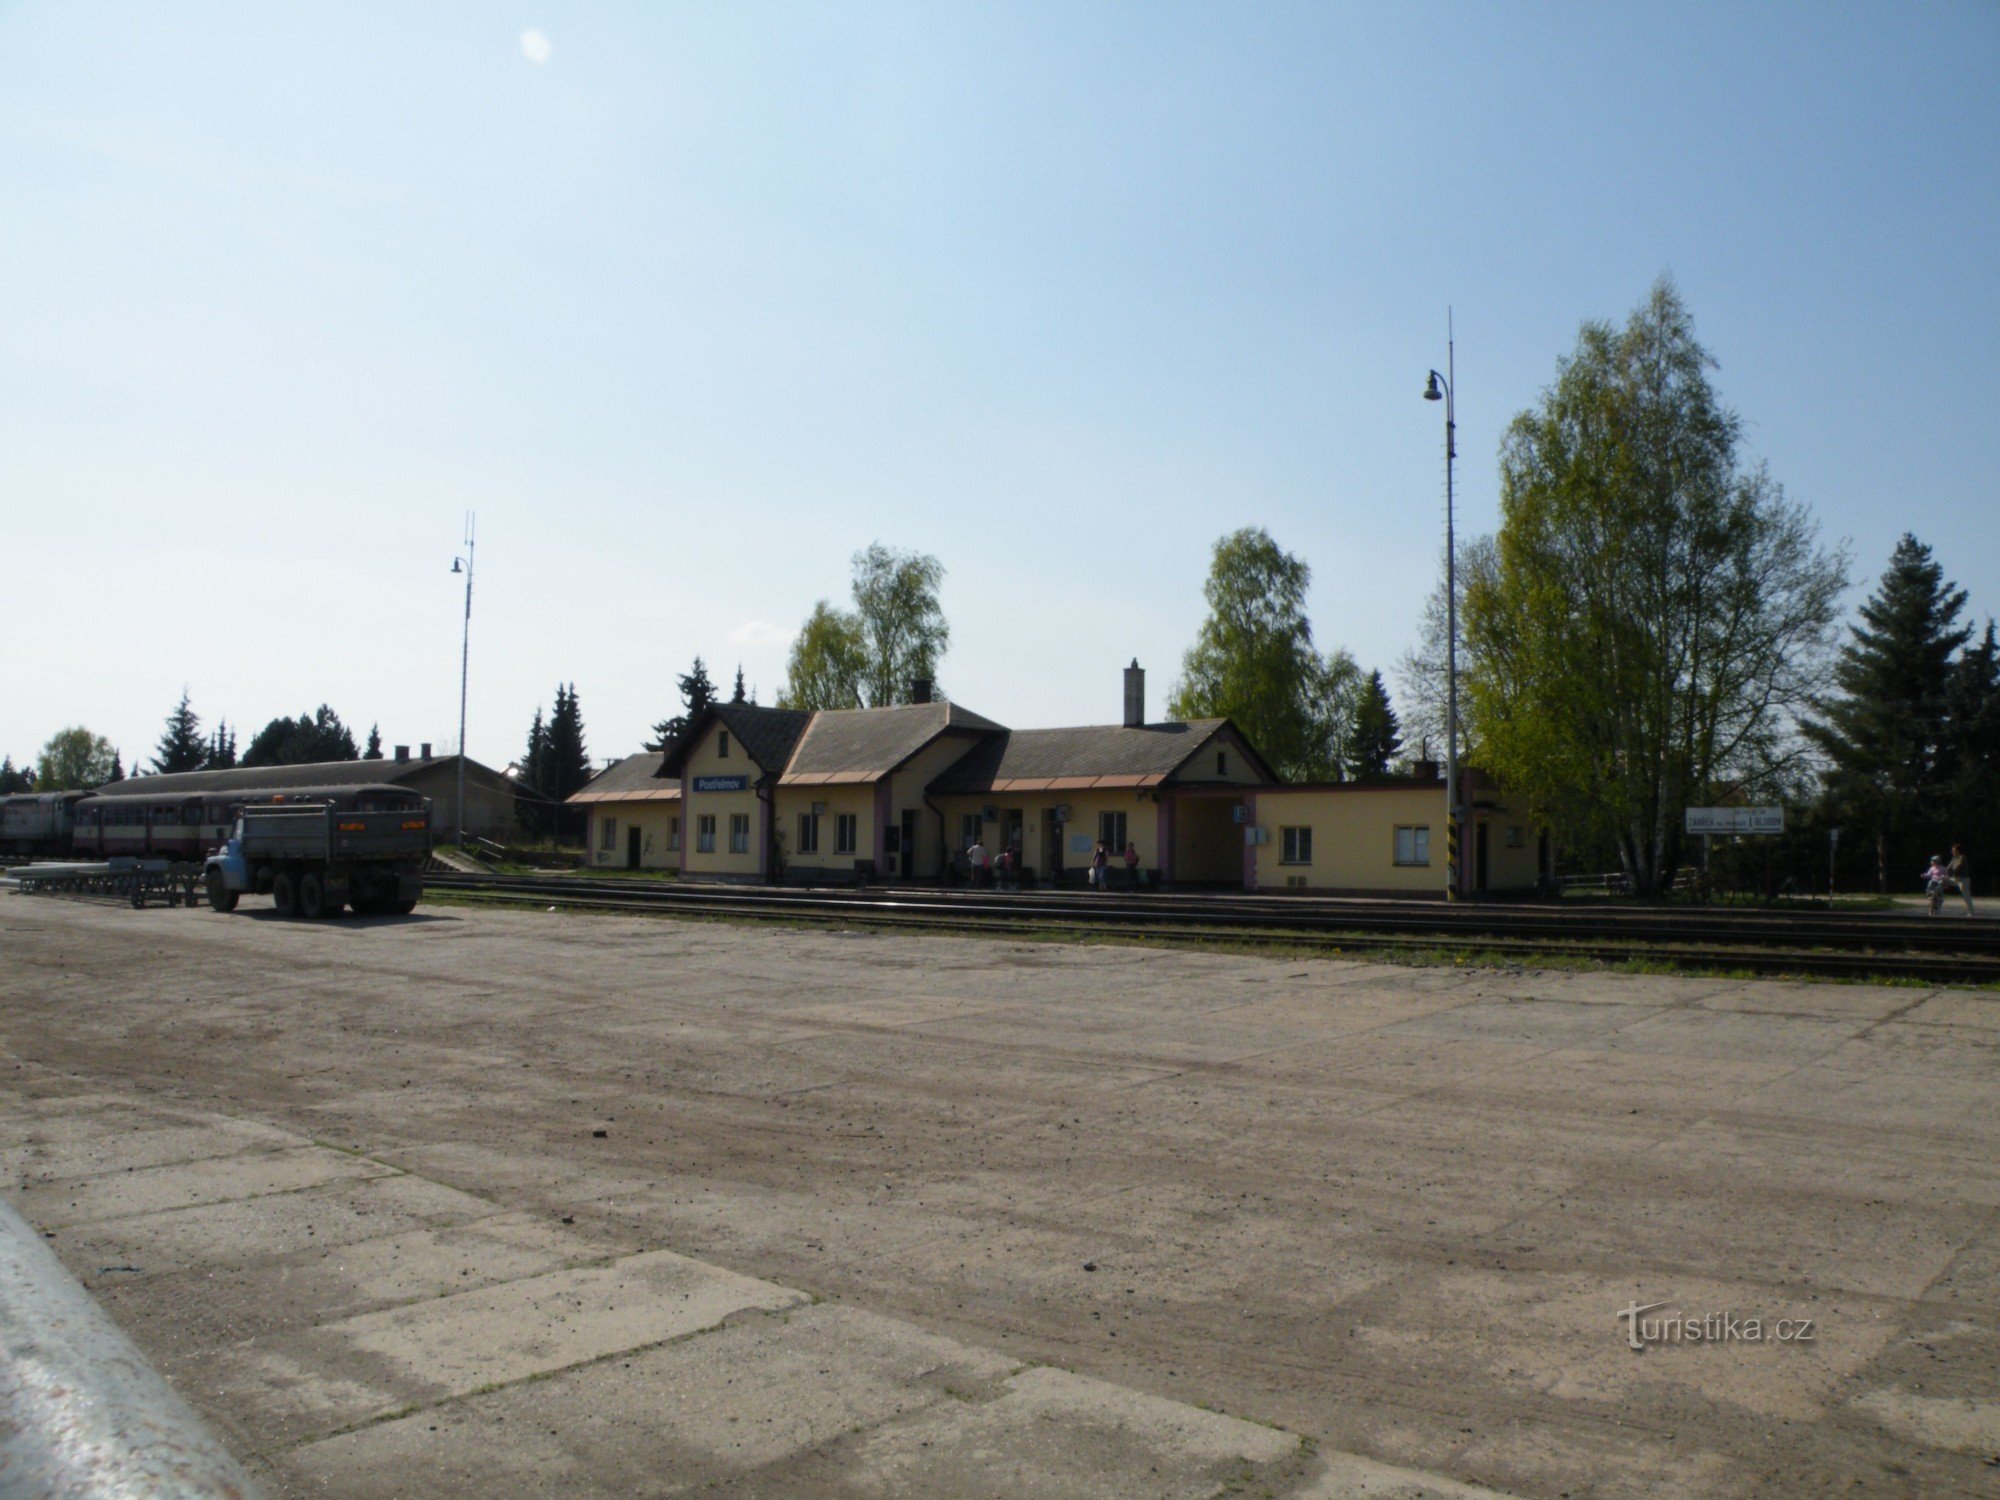 Postřelmov - railway station